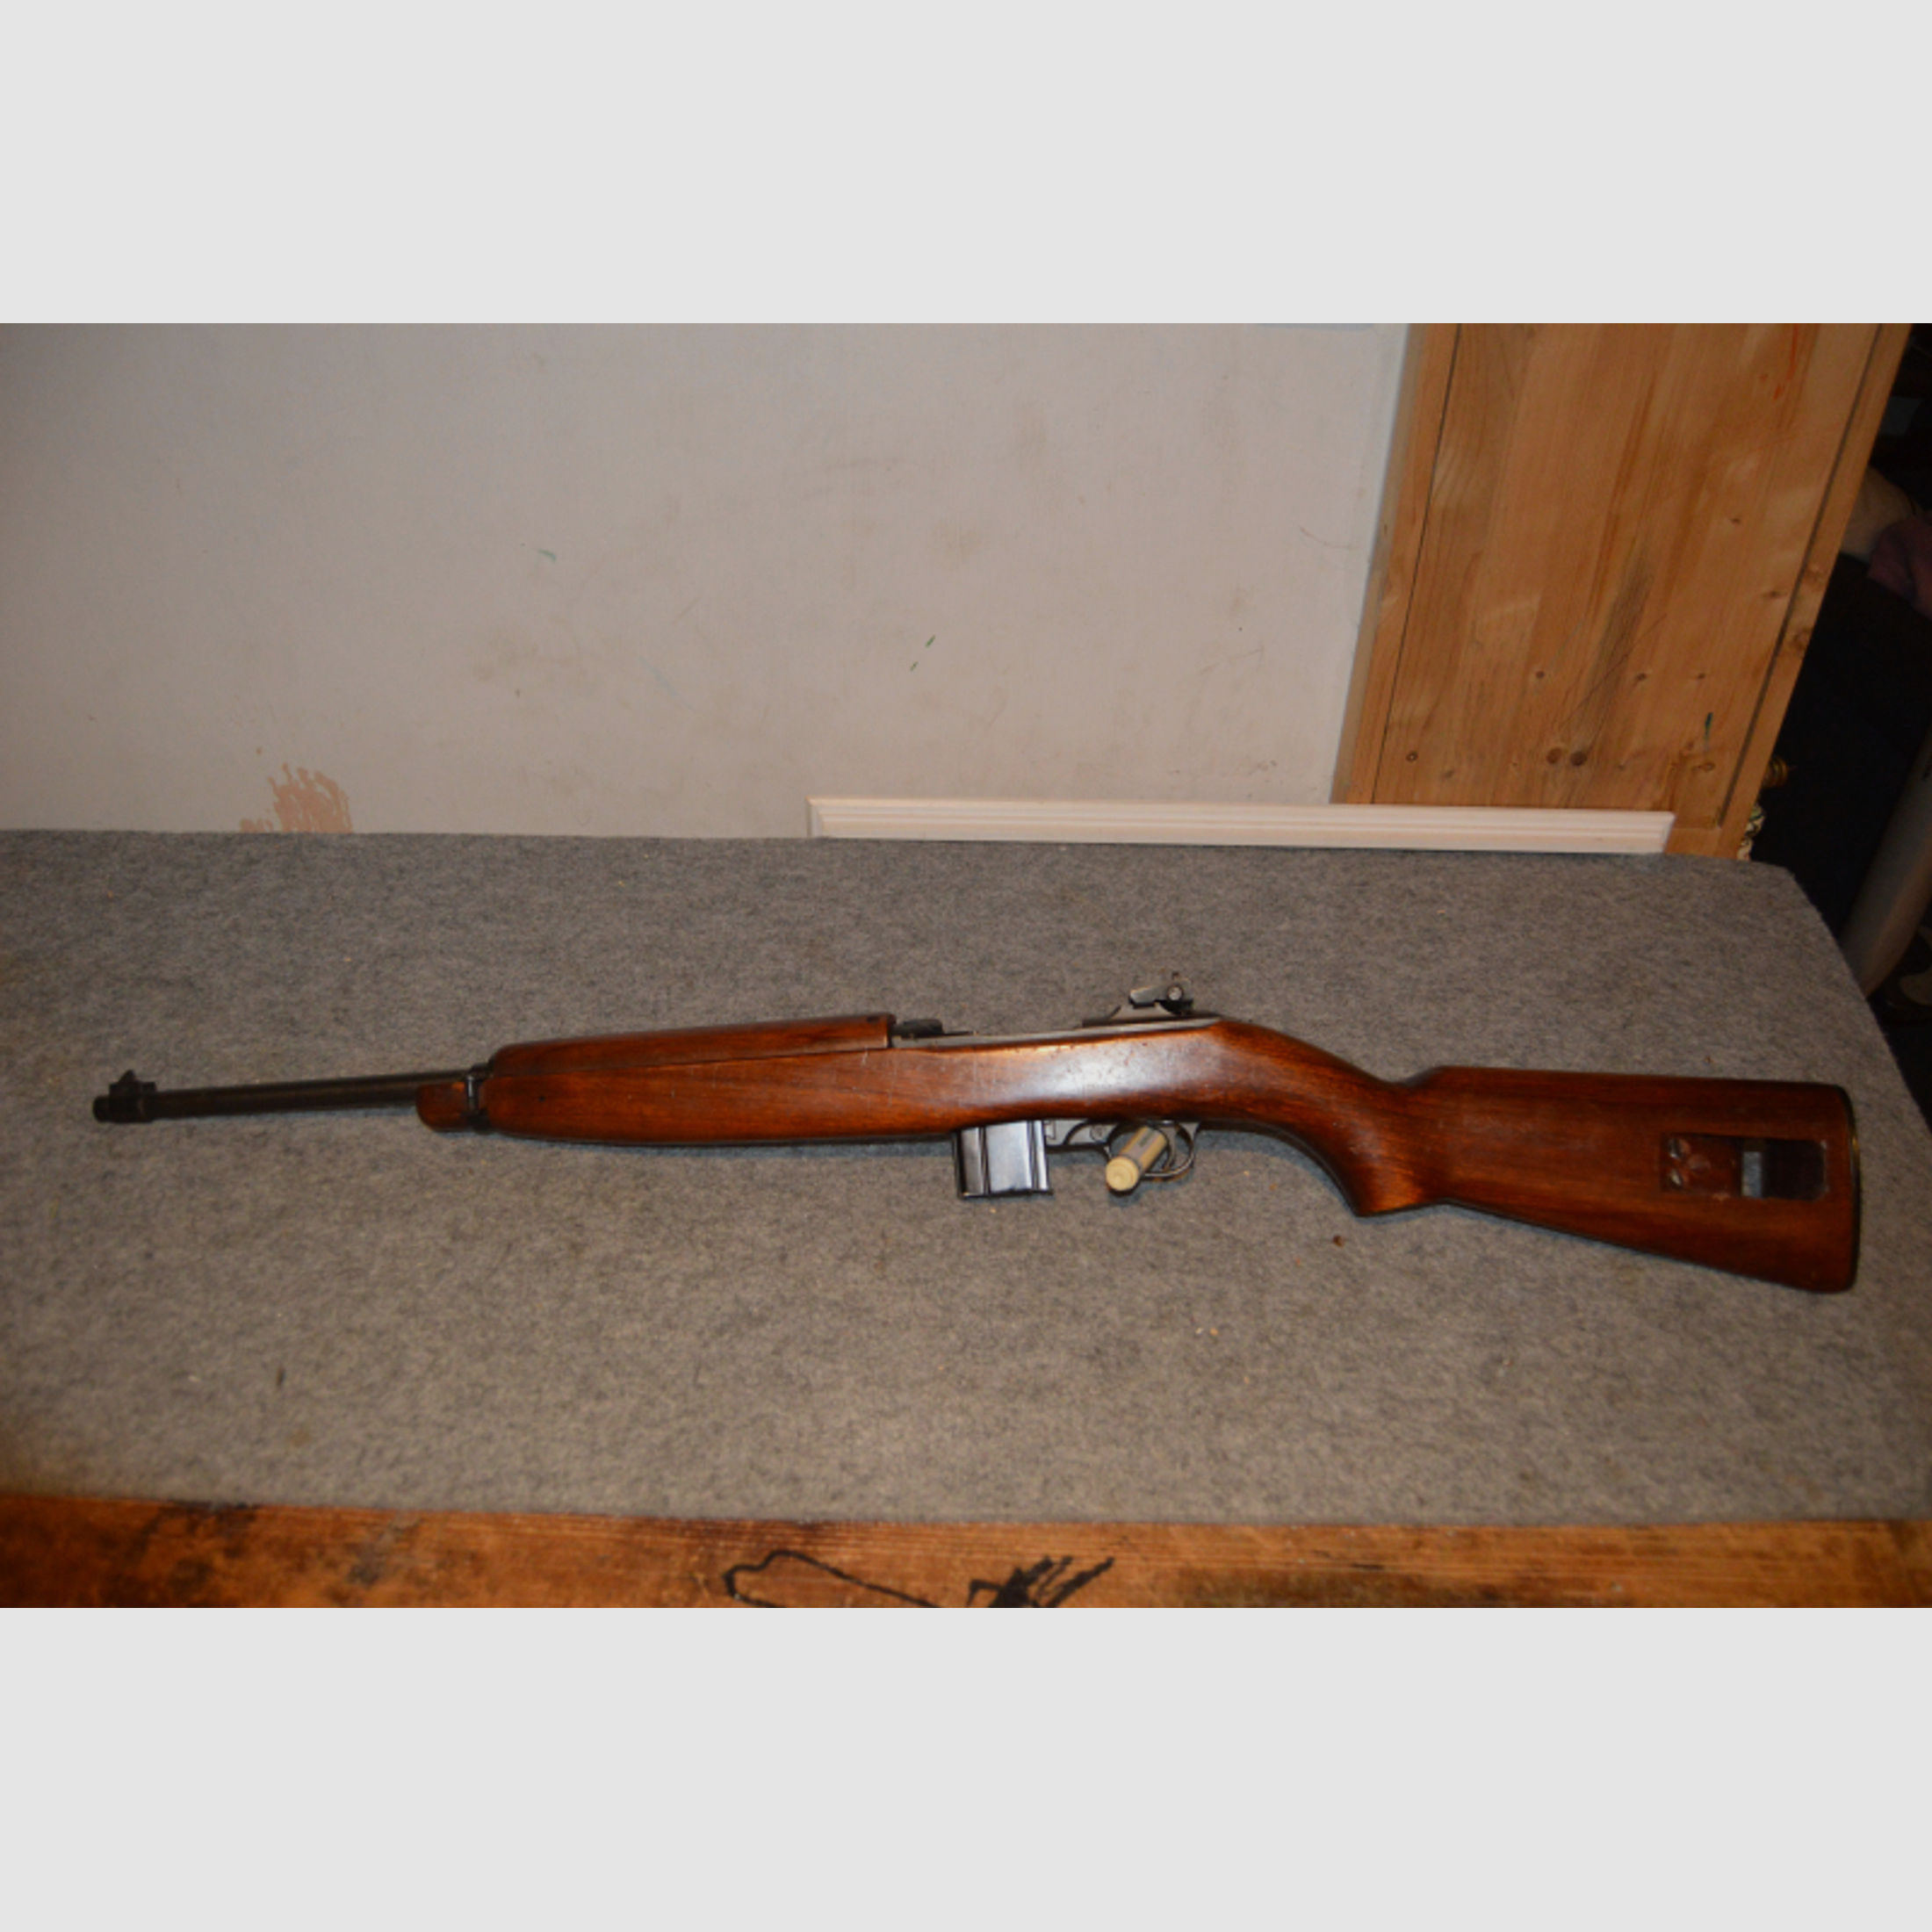 30M1 Carbine Hersteller Underwood beschrifted bavaria prison guard